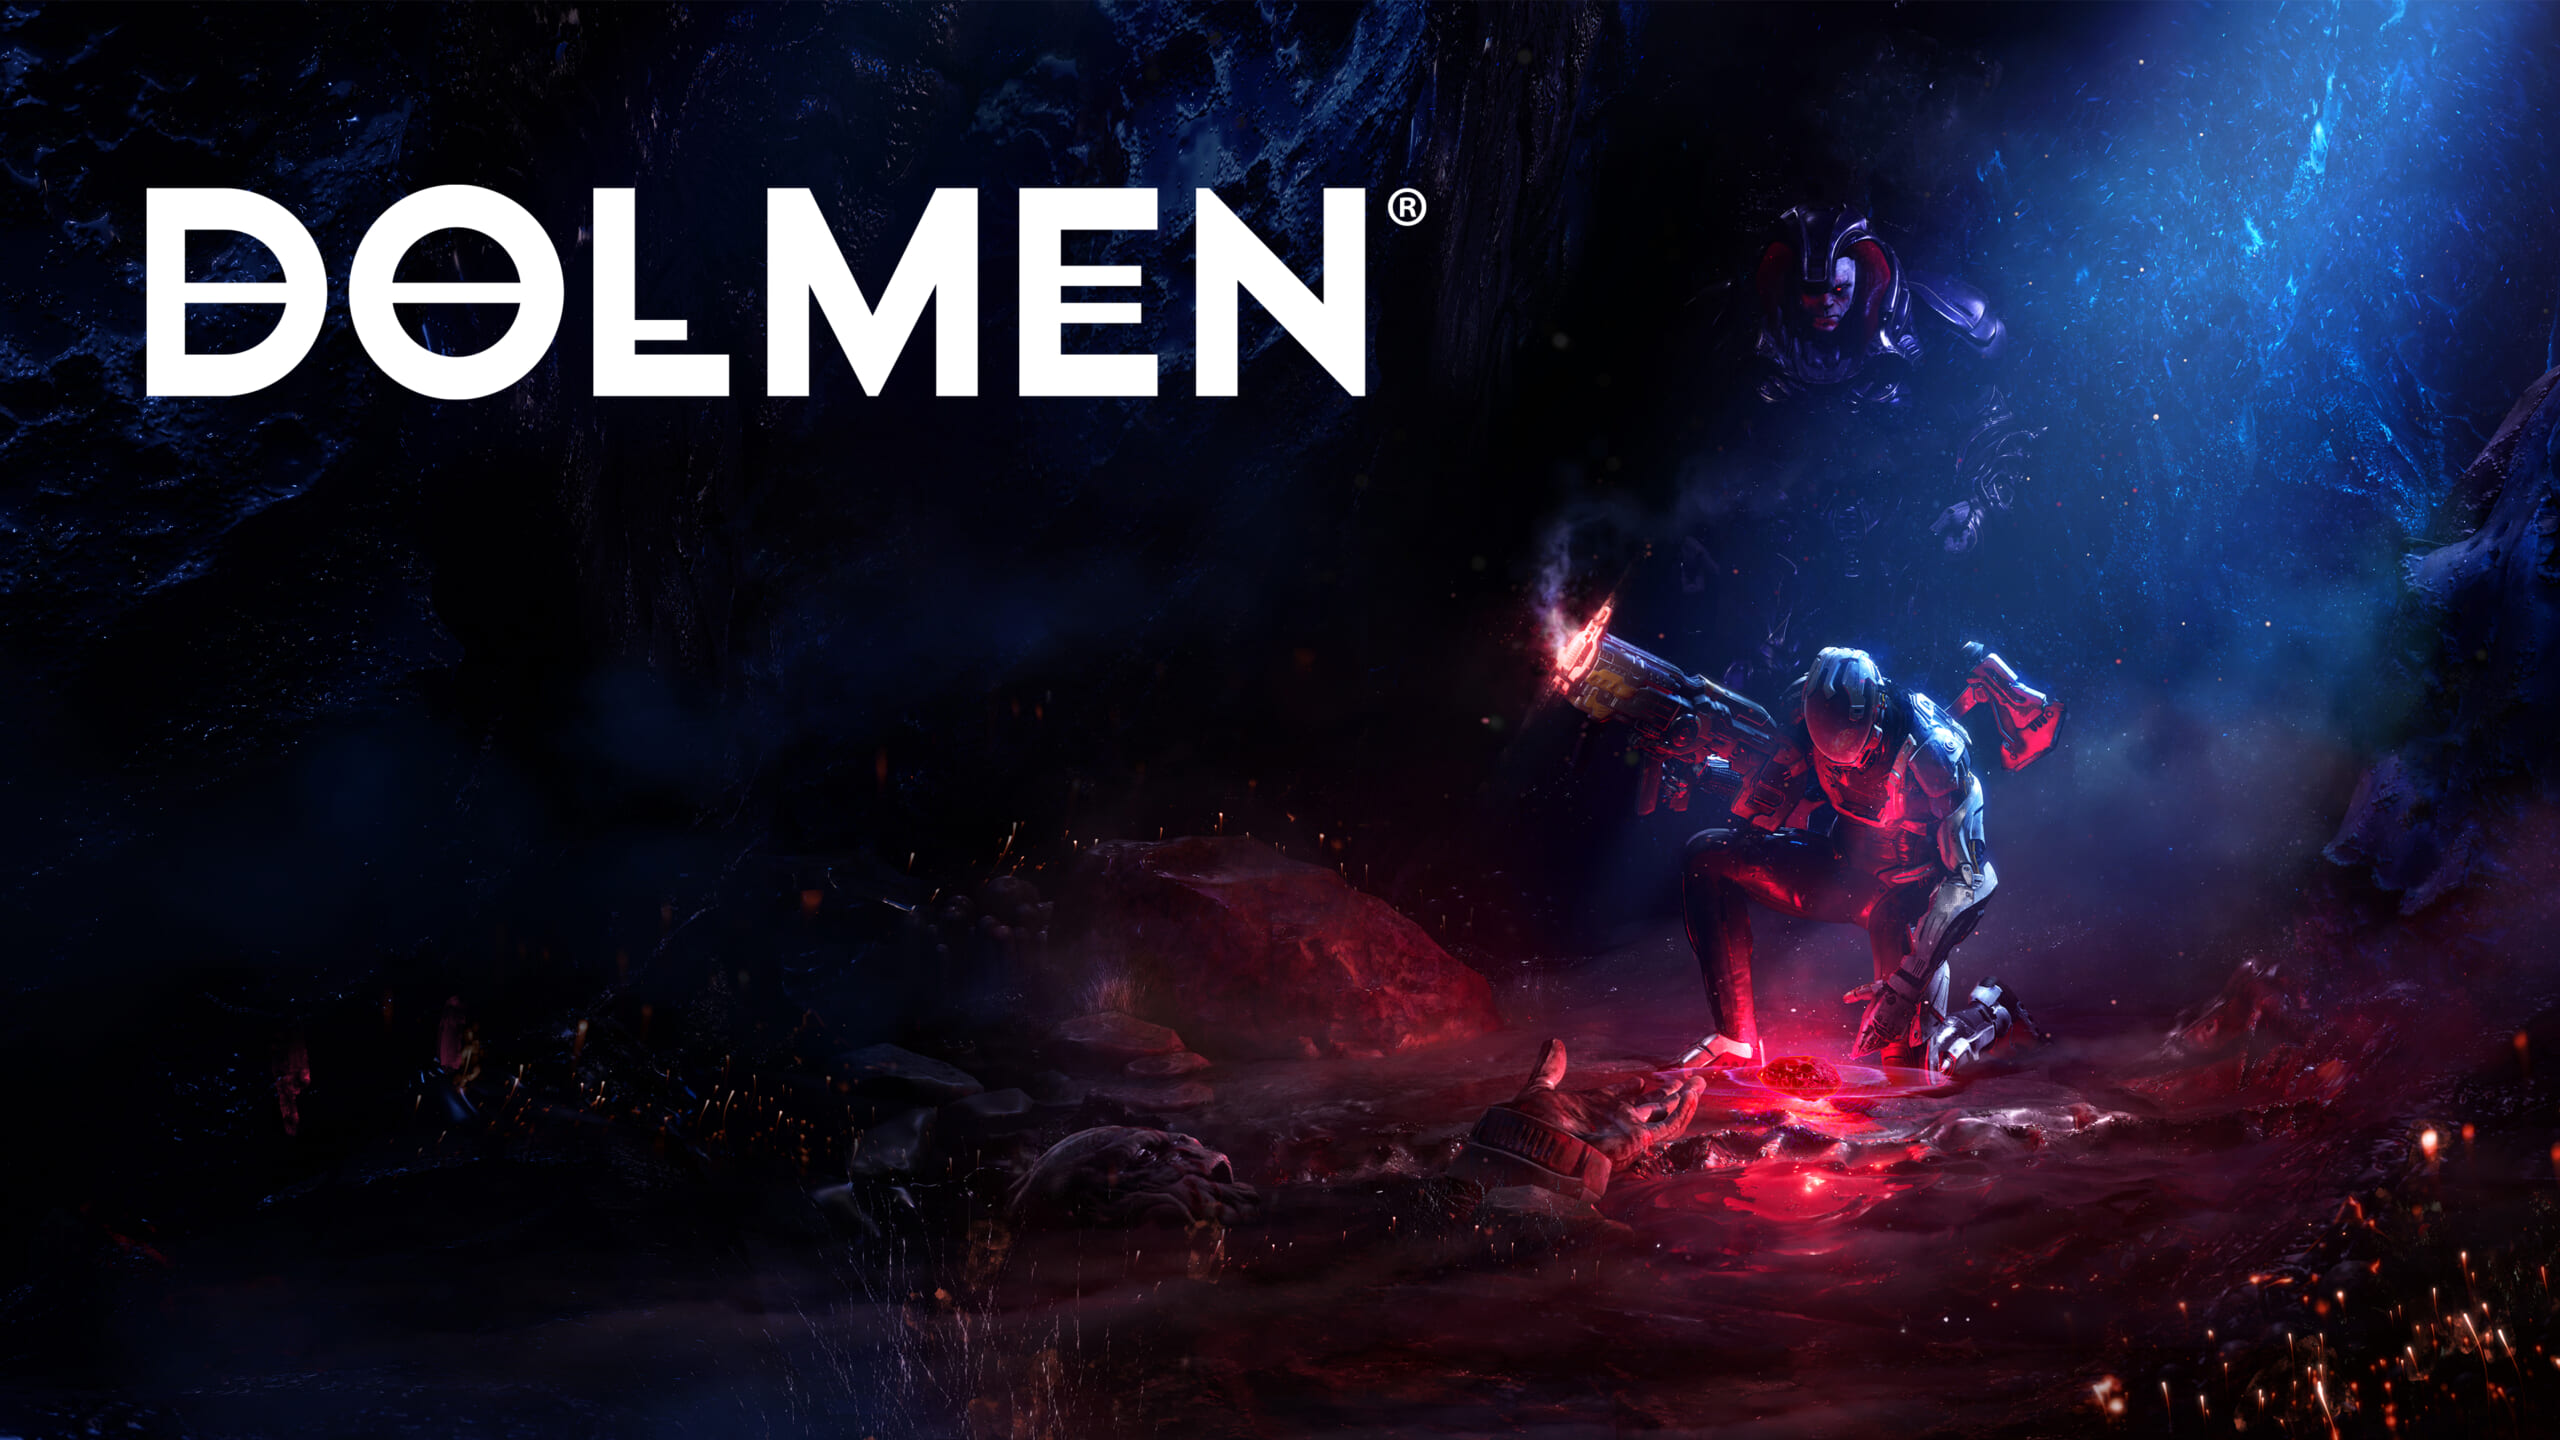 「人類の知らない宇宙の残酷さ」を描くアクションRPG『Dolmen』2022年に発売へ。H.P.ラヴクラフトや近代ポップカルチャーの影響を受ける作品_001